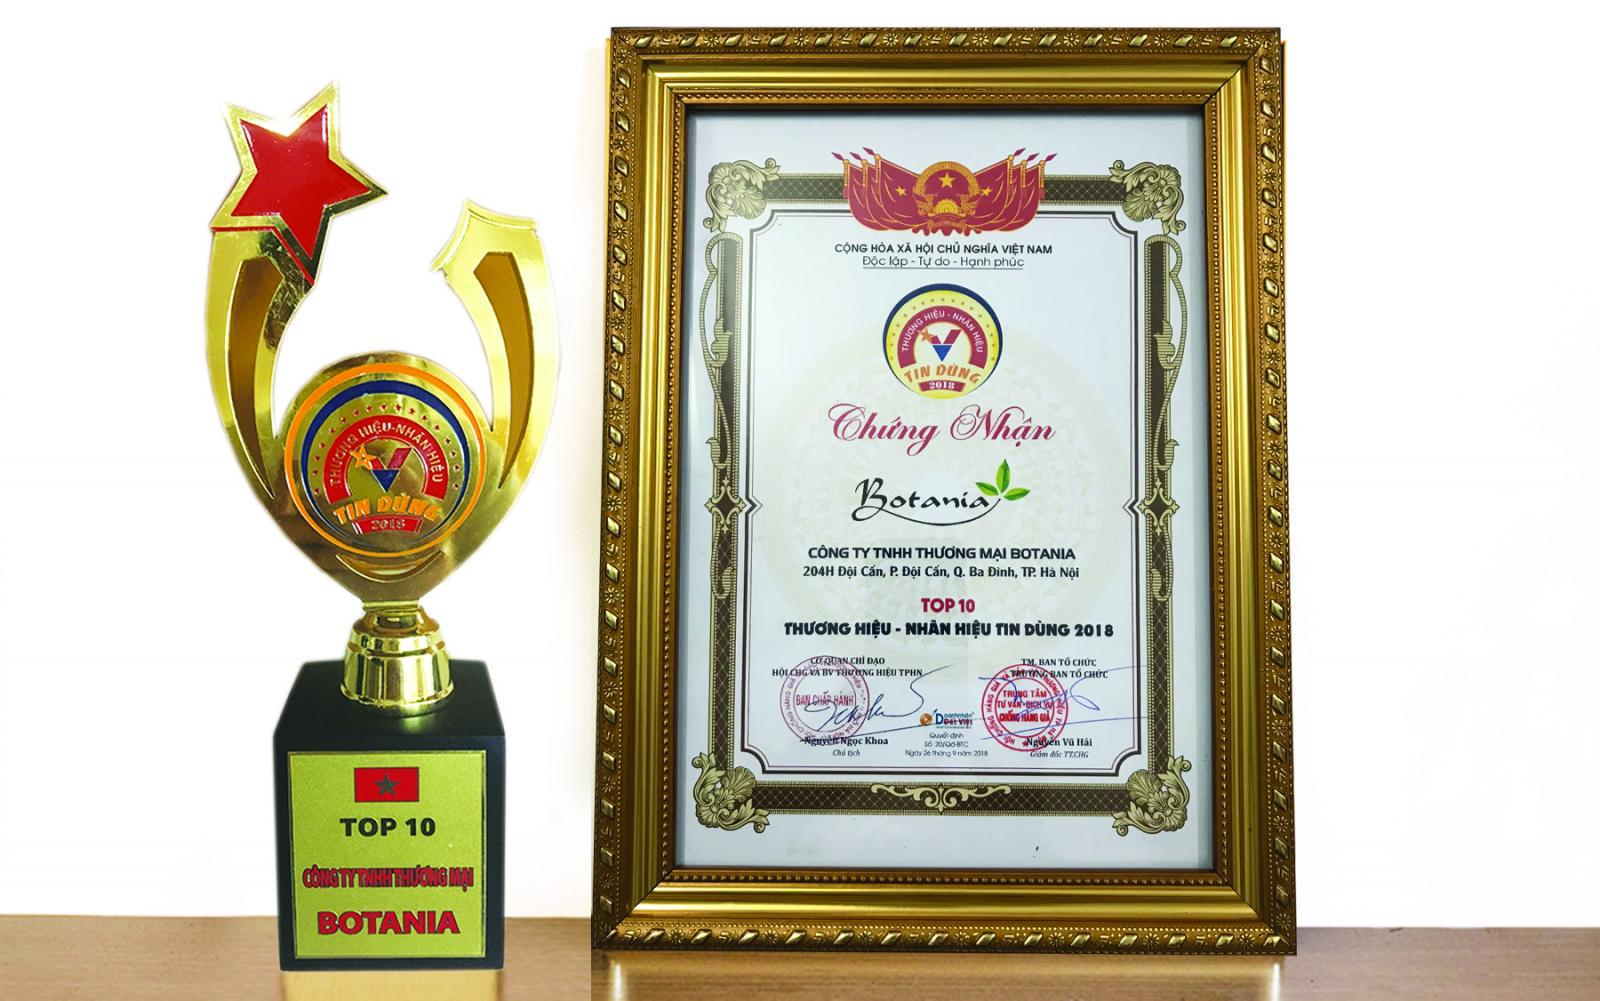 Công ty Botania - Top 10 thương hiệu, nhãn hiệu tin dùng Việt Nam